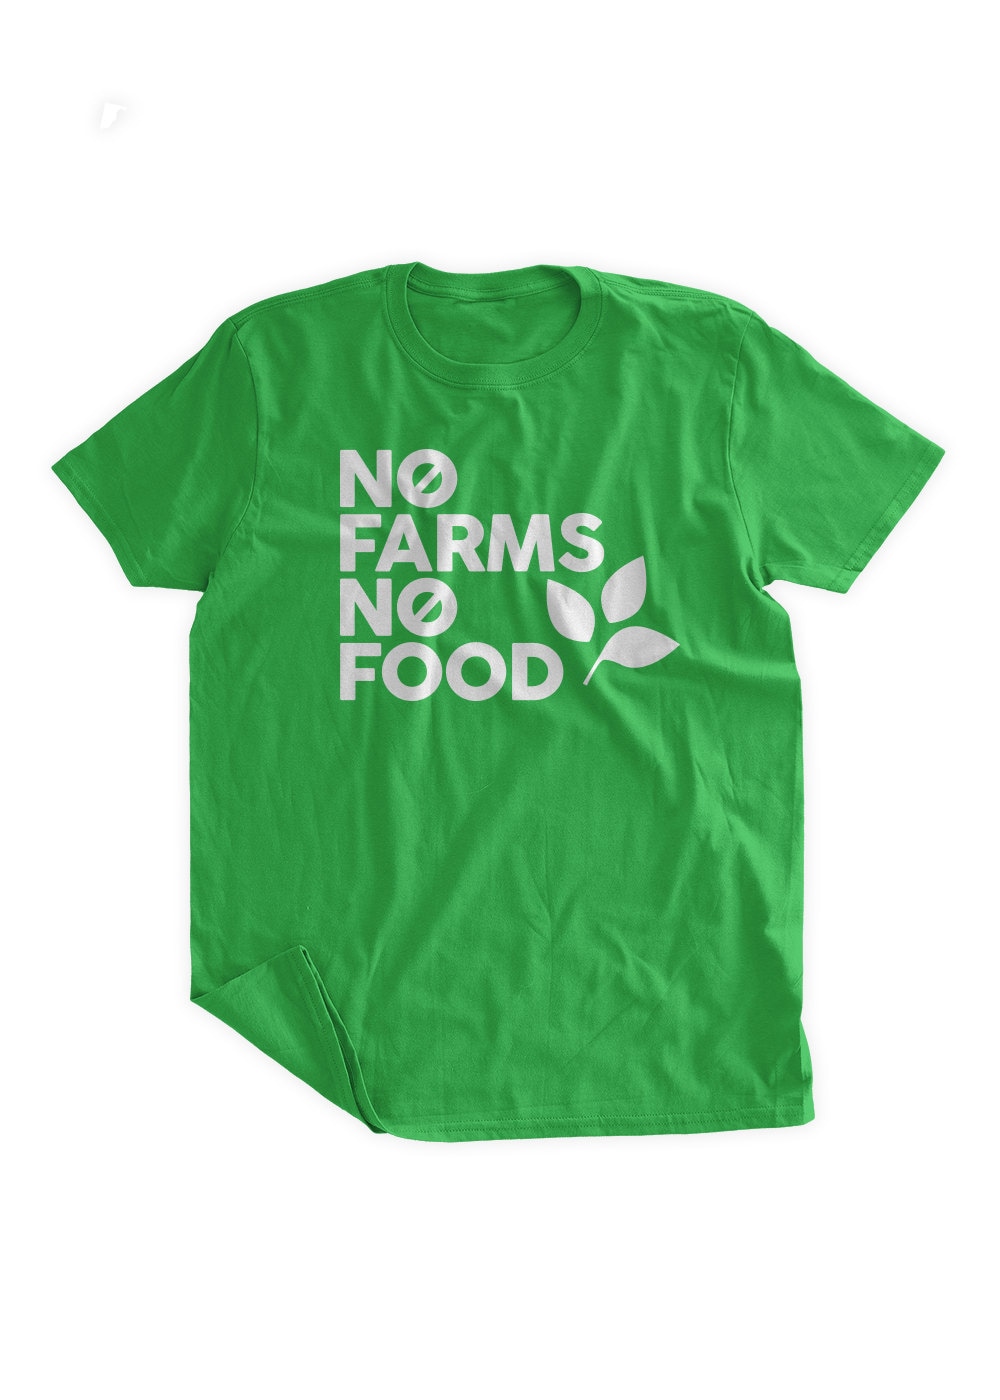 No Farms No Food T-Shirt Farming Tshirt Eat Local Farmers